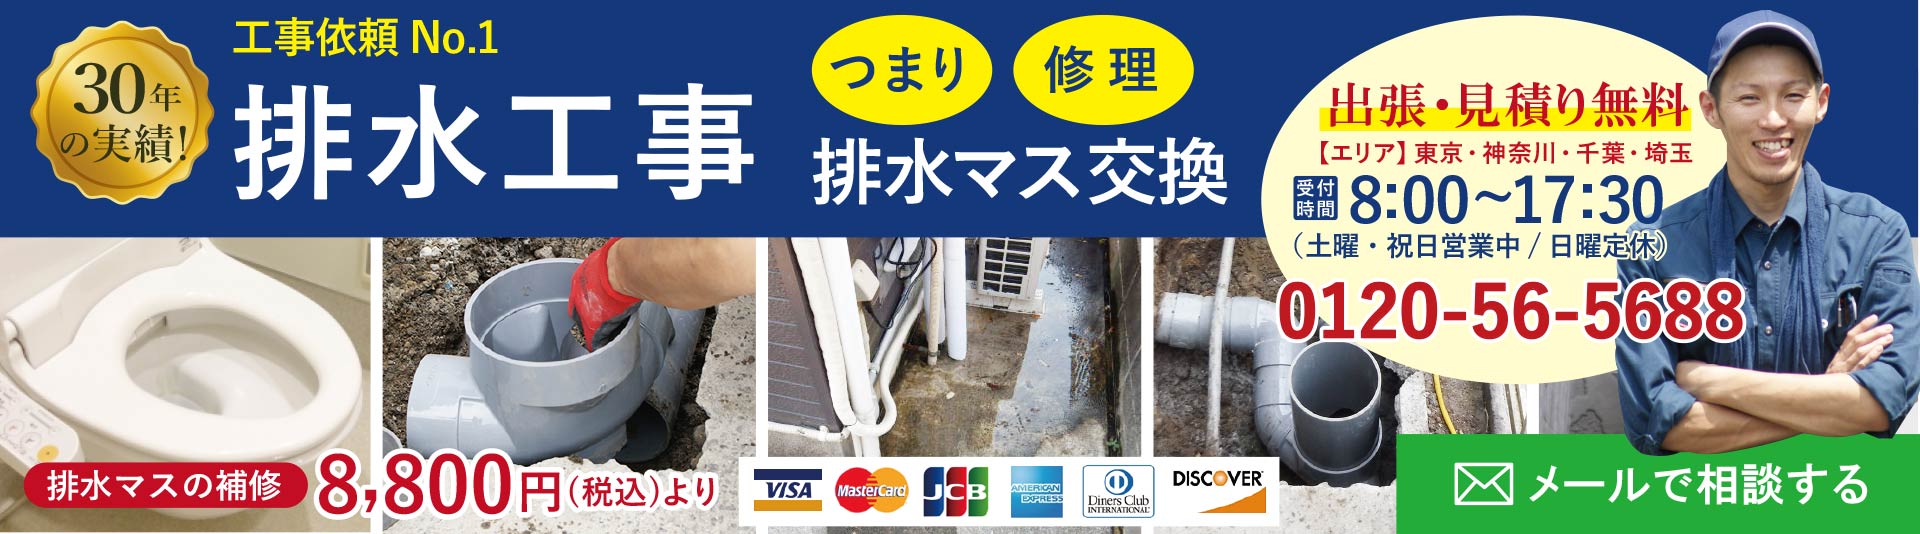 東京のつまり、トイレつまり、悪臭、排水枡や排水管の修理工事の専門店 安心の水道局指定工事店 出張費、お見積りは無料です